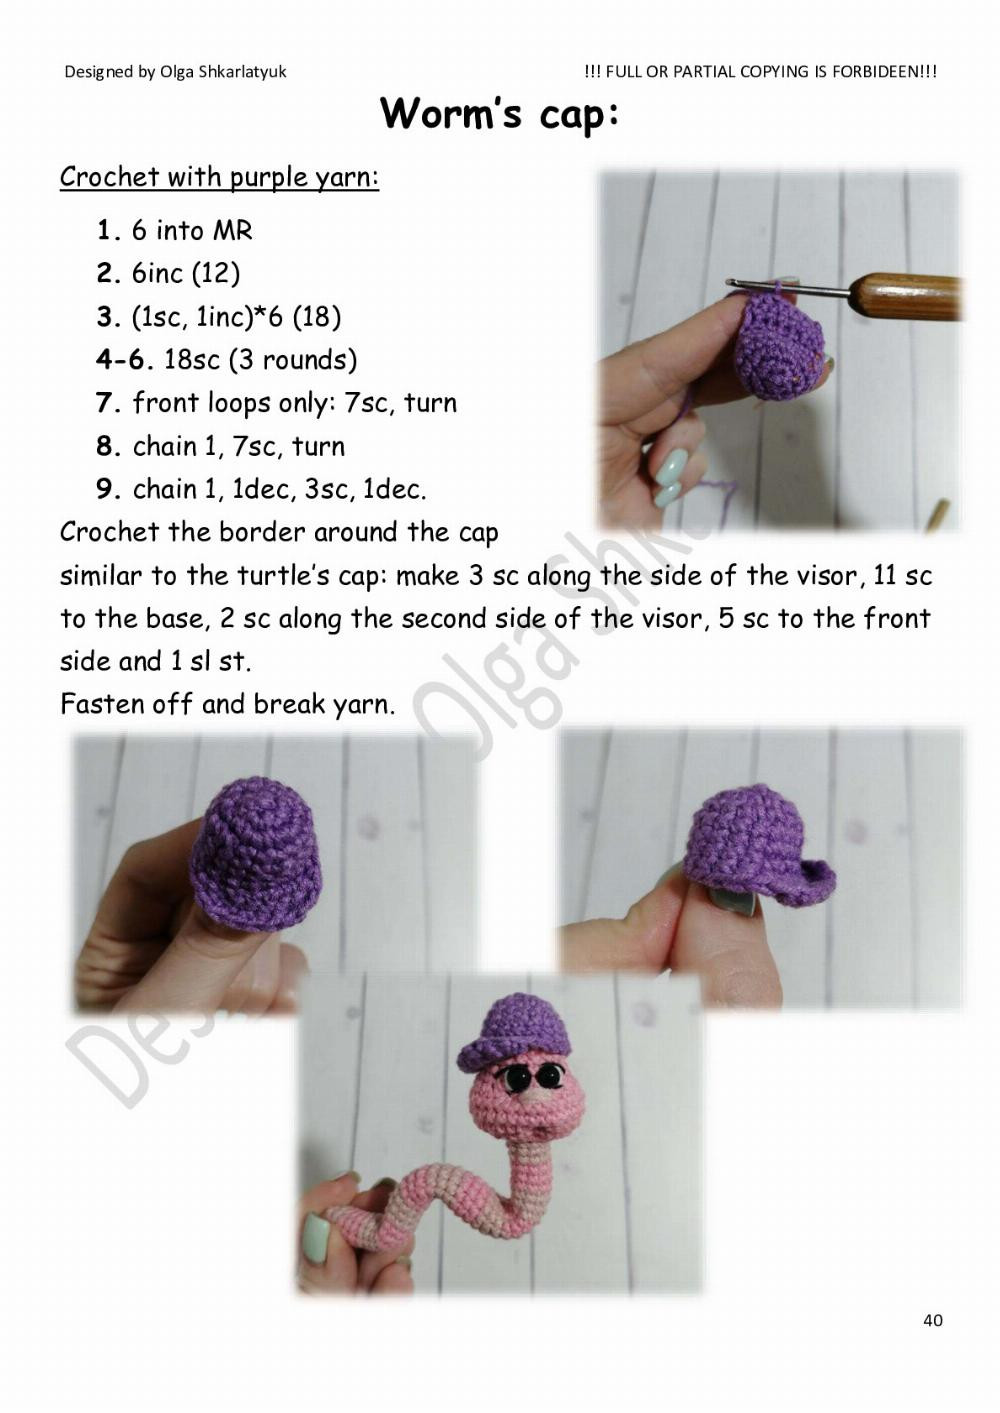 Crochet toy pattern « Turtle»